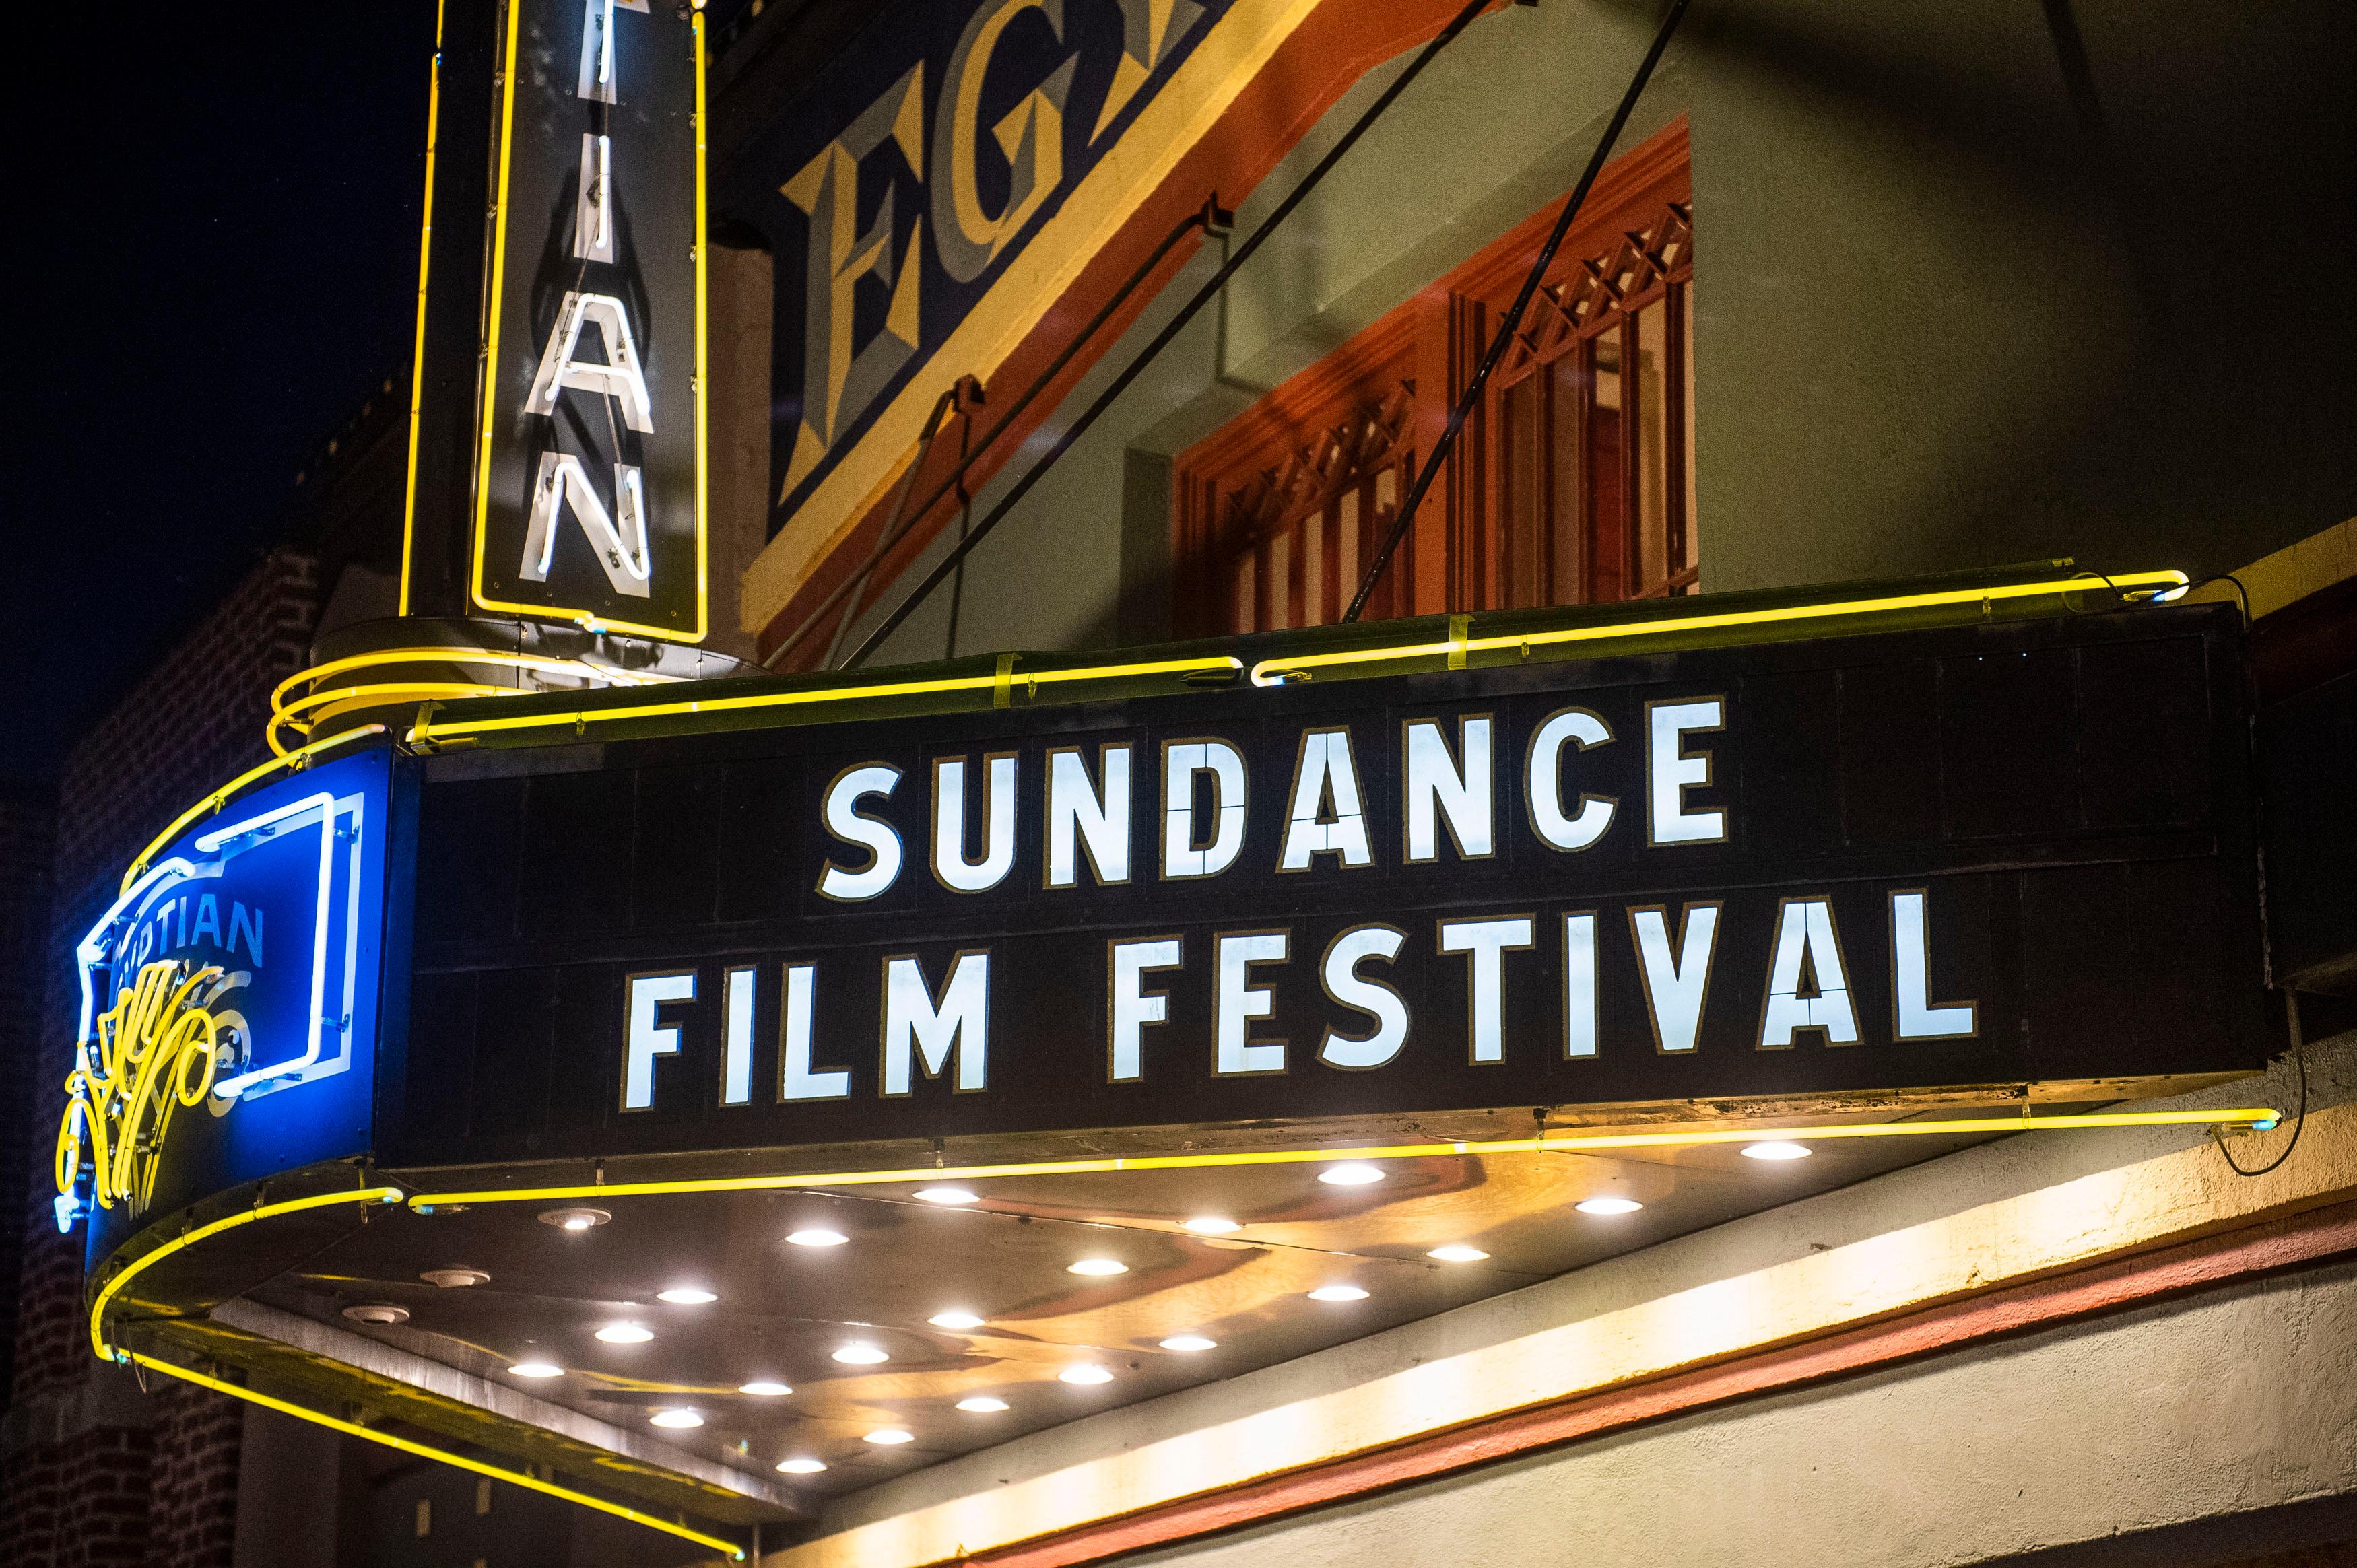 Film Sundance Film Festival